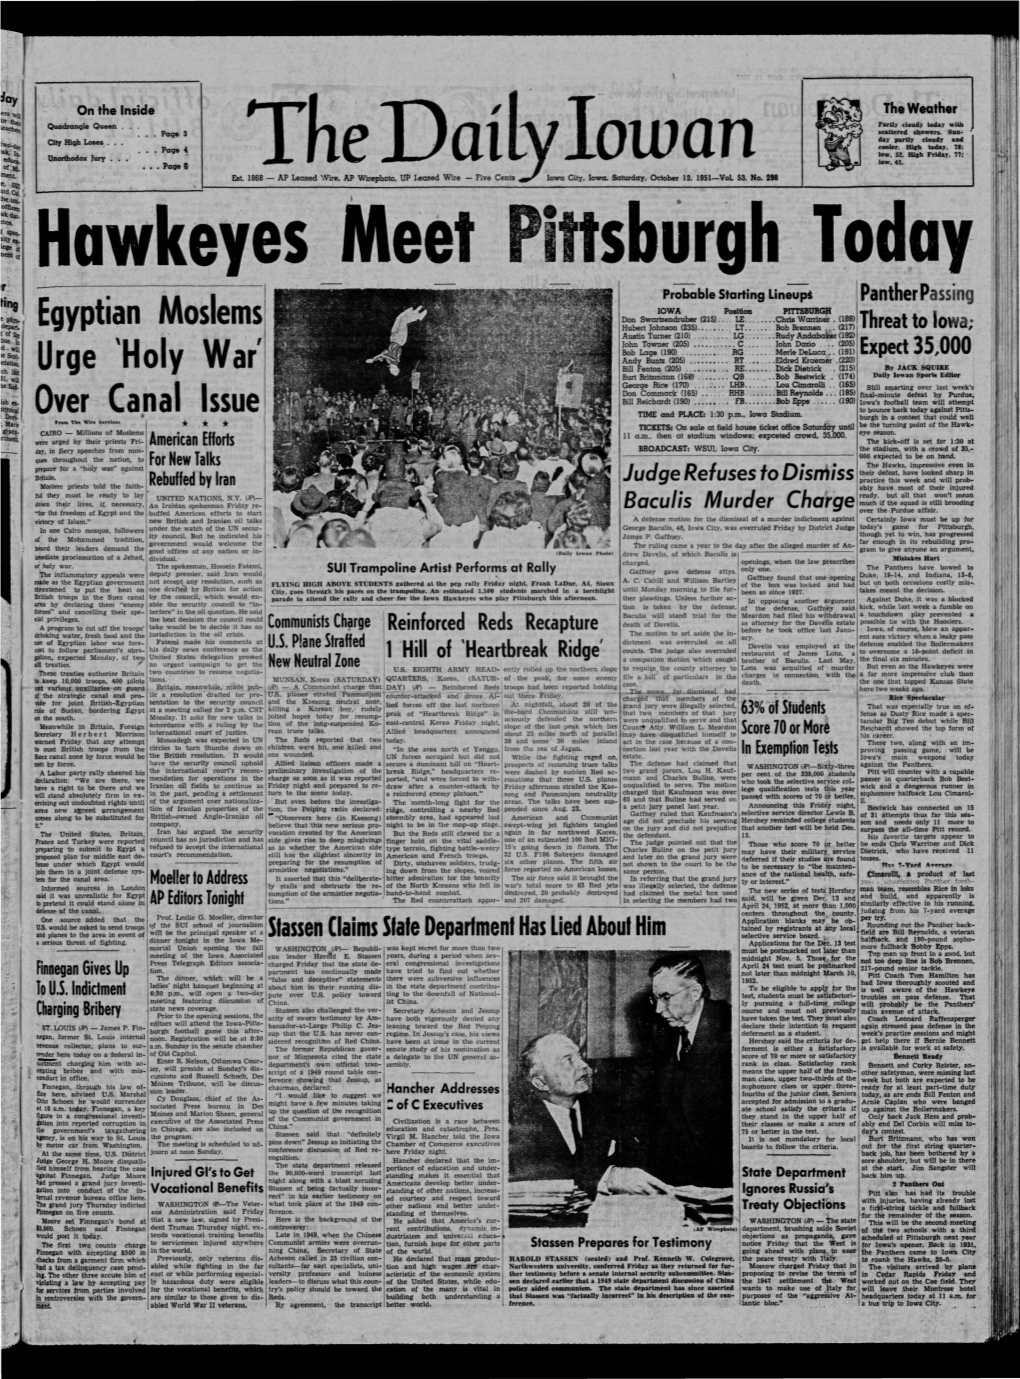 Daily Iowan (Iowa City, Iowa), 1951-10-13